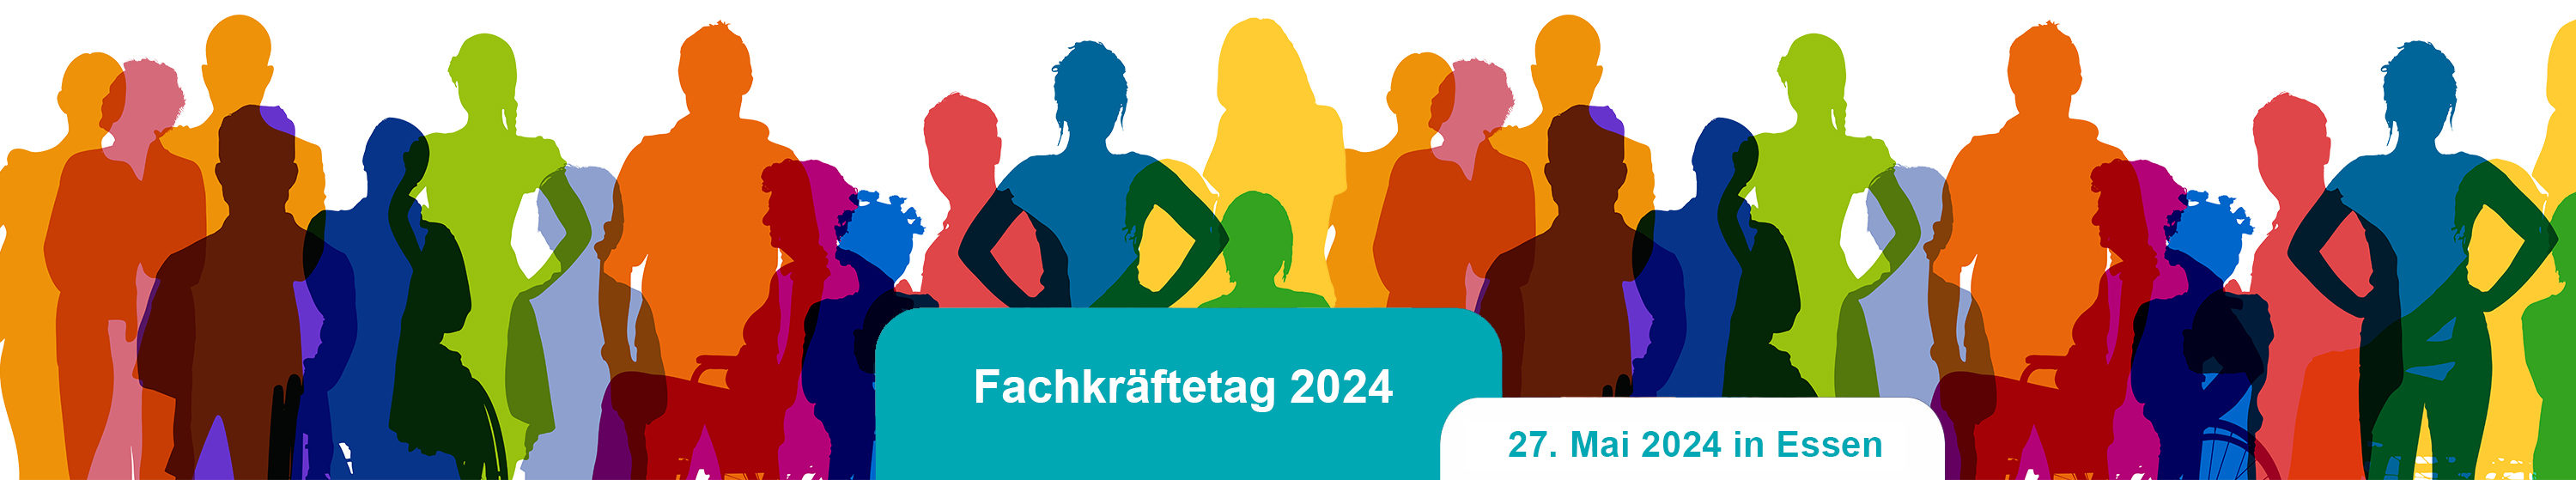 Bild einer Gruppe von Personen aus der Gesellschaft mit einem roten und weißem Balken, auf dem Fachkräftetag 2024 - 27. Mai 2024, in Essen steht